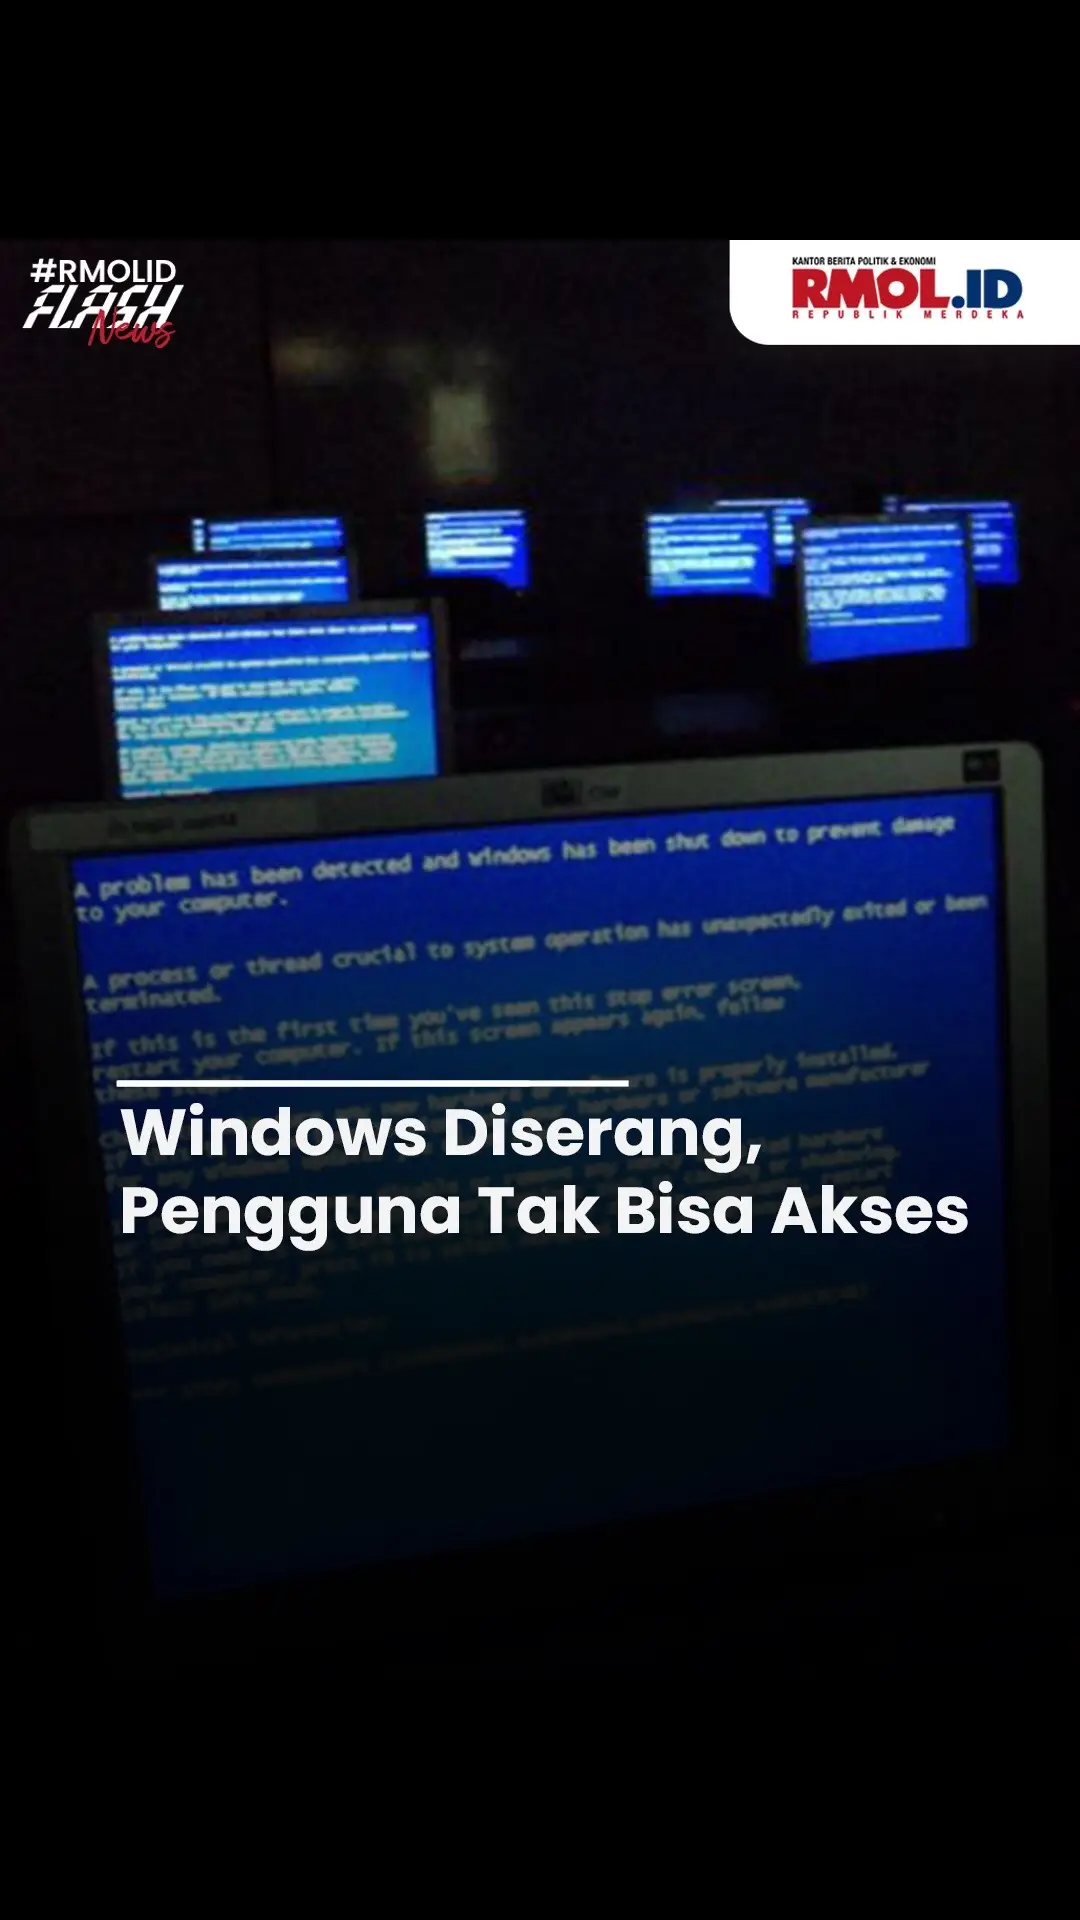 Windows Diserang, Pengguna Tak Bisa Akses Jutaan pengguna Microsoft Windows di seluruh dunia mengalami Blue Screen of Death (BSOD) yang membuat perangkat PC mati atau atur ulang secara tiba-tiba, pada Jumat (19/7). Hal itu disebabkan karena pembaharuan CrowdStrike 